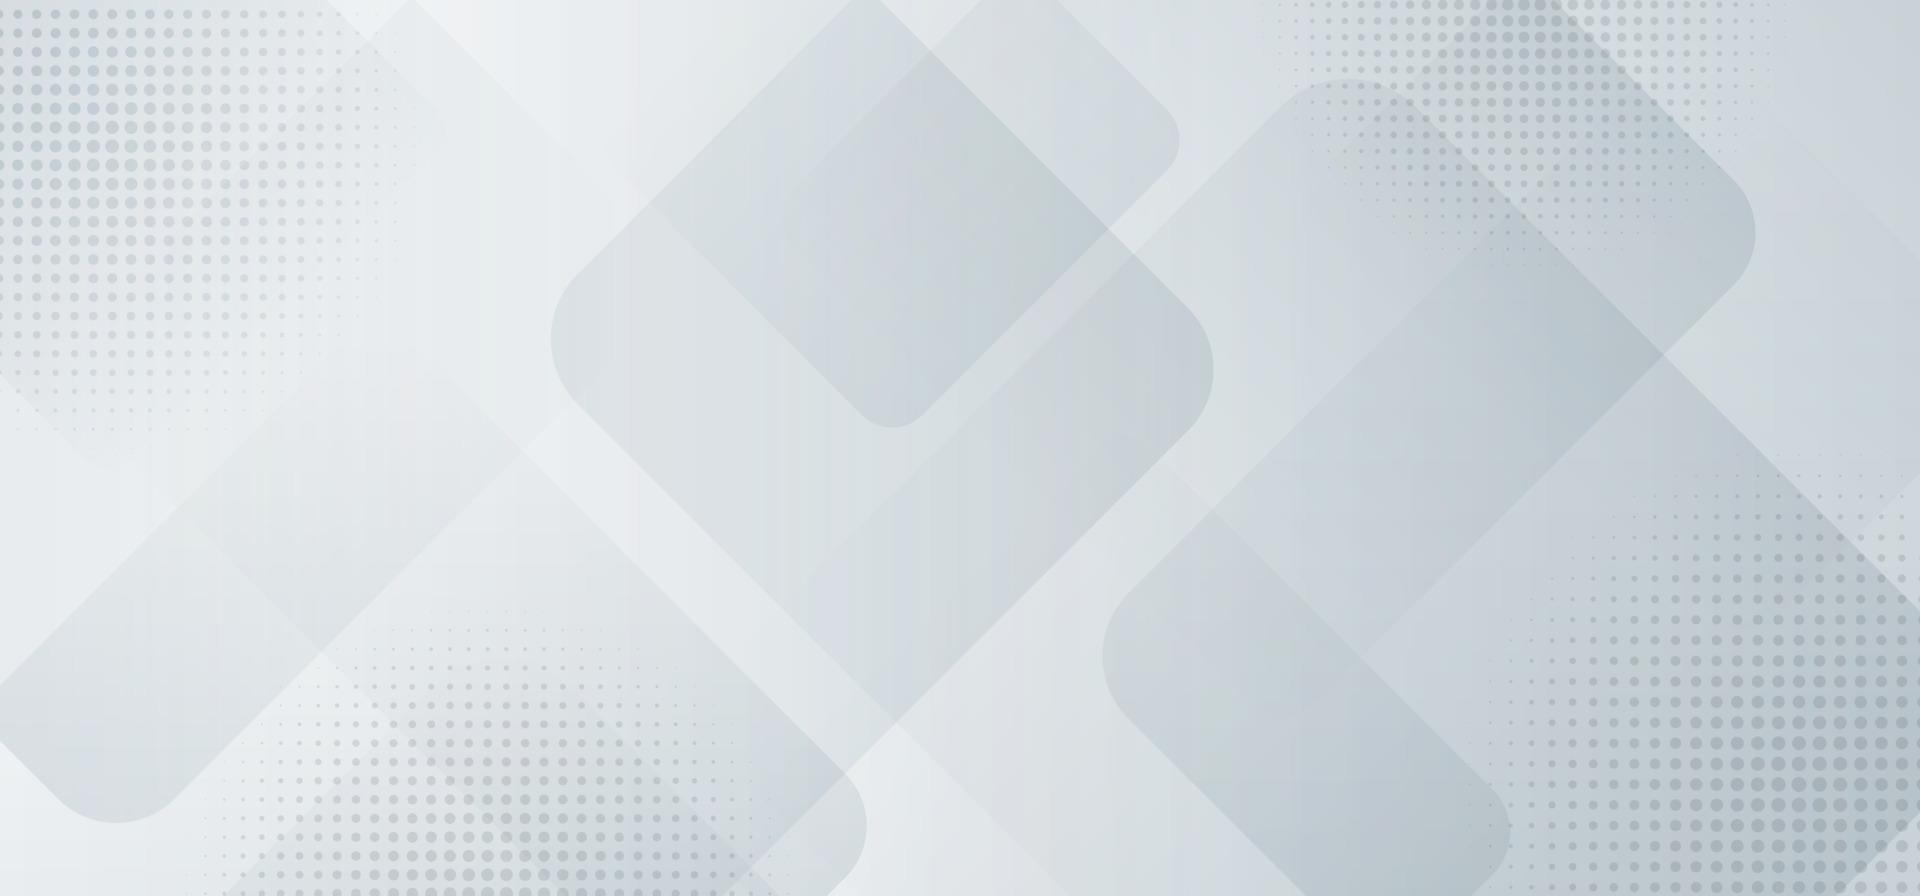 banner abstrato design do modelo da web quadrados brancos e cinza de fundo com camadas de meio-tom vetor